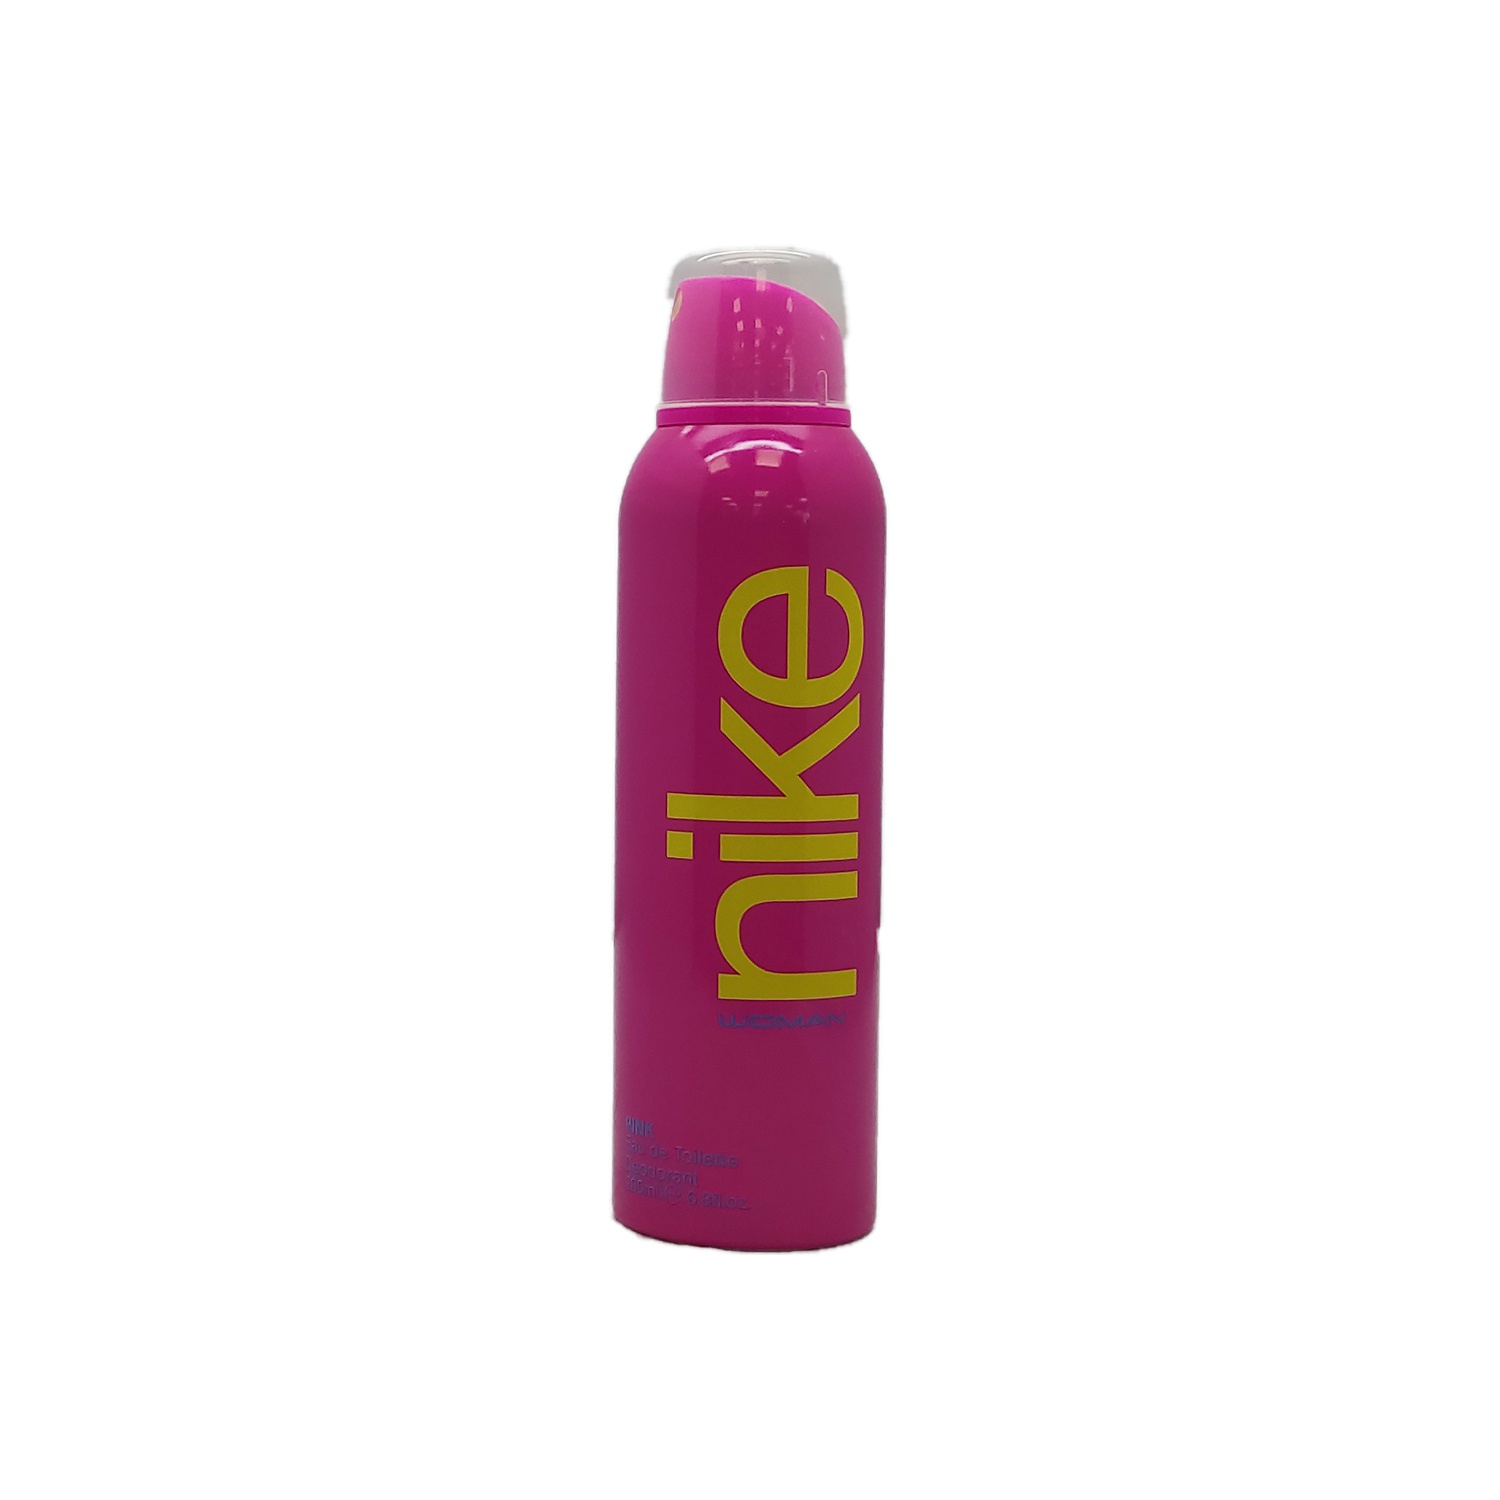 Nike Deodorant Body Spray Pink 200Ml - NIKE - Female Fragrances - in Sri Lanka